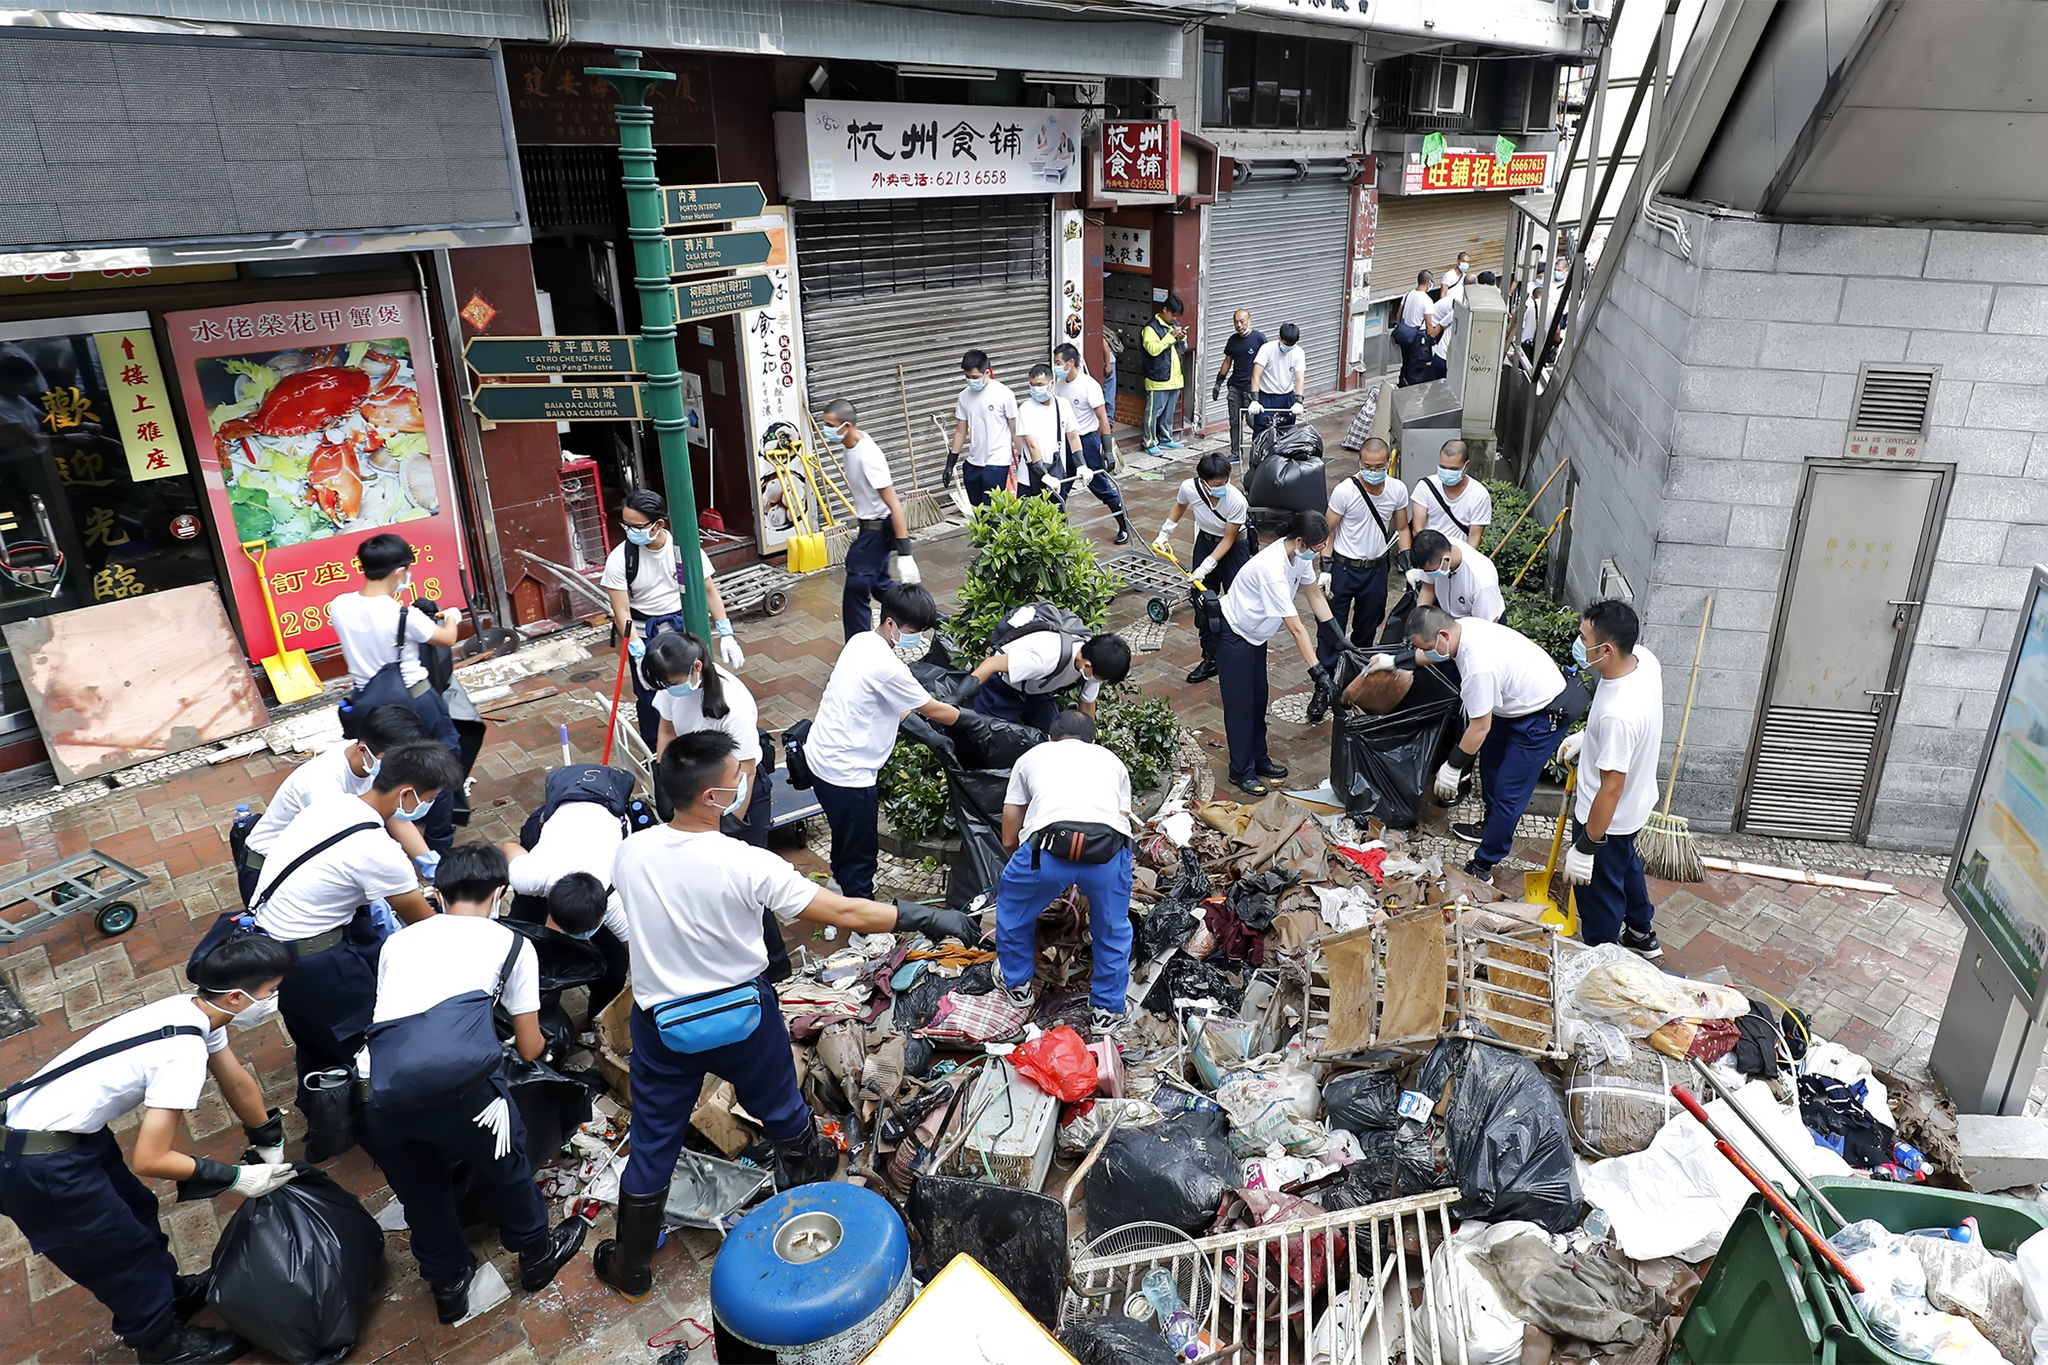 Tufões | Autoridades de Macau anunciam conclusão do sistema de alerta